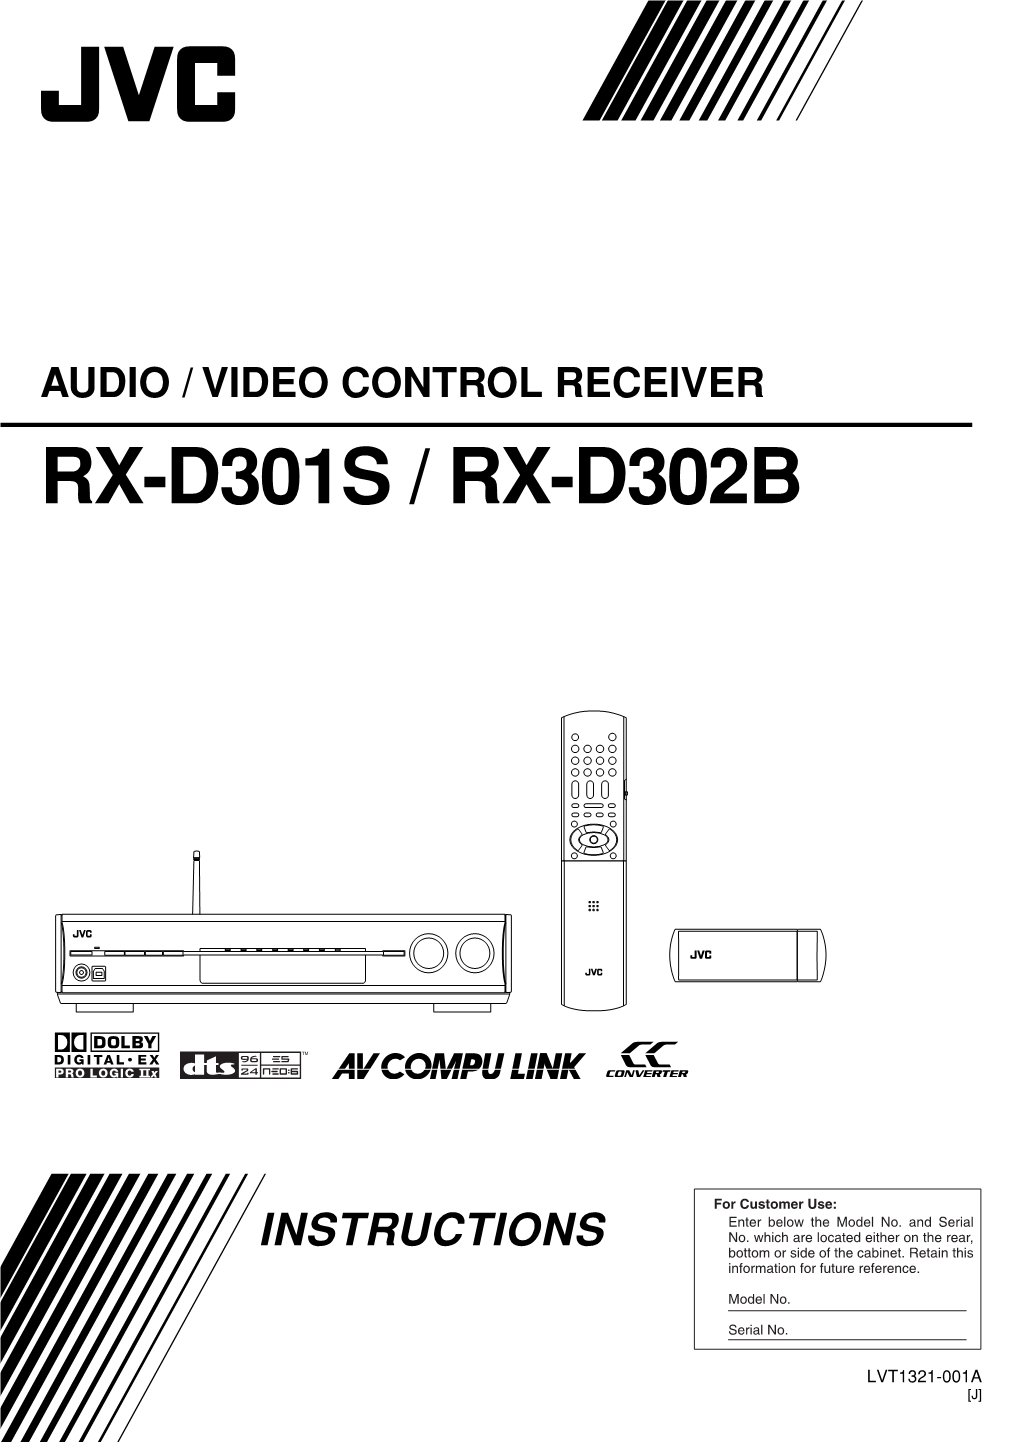 Audio / Video Control Receiver Rx-D301s / Rx-D302b